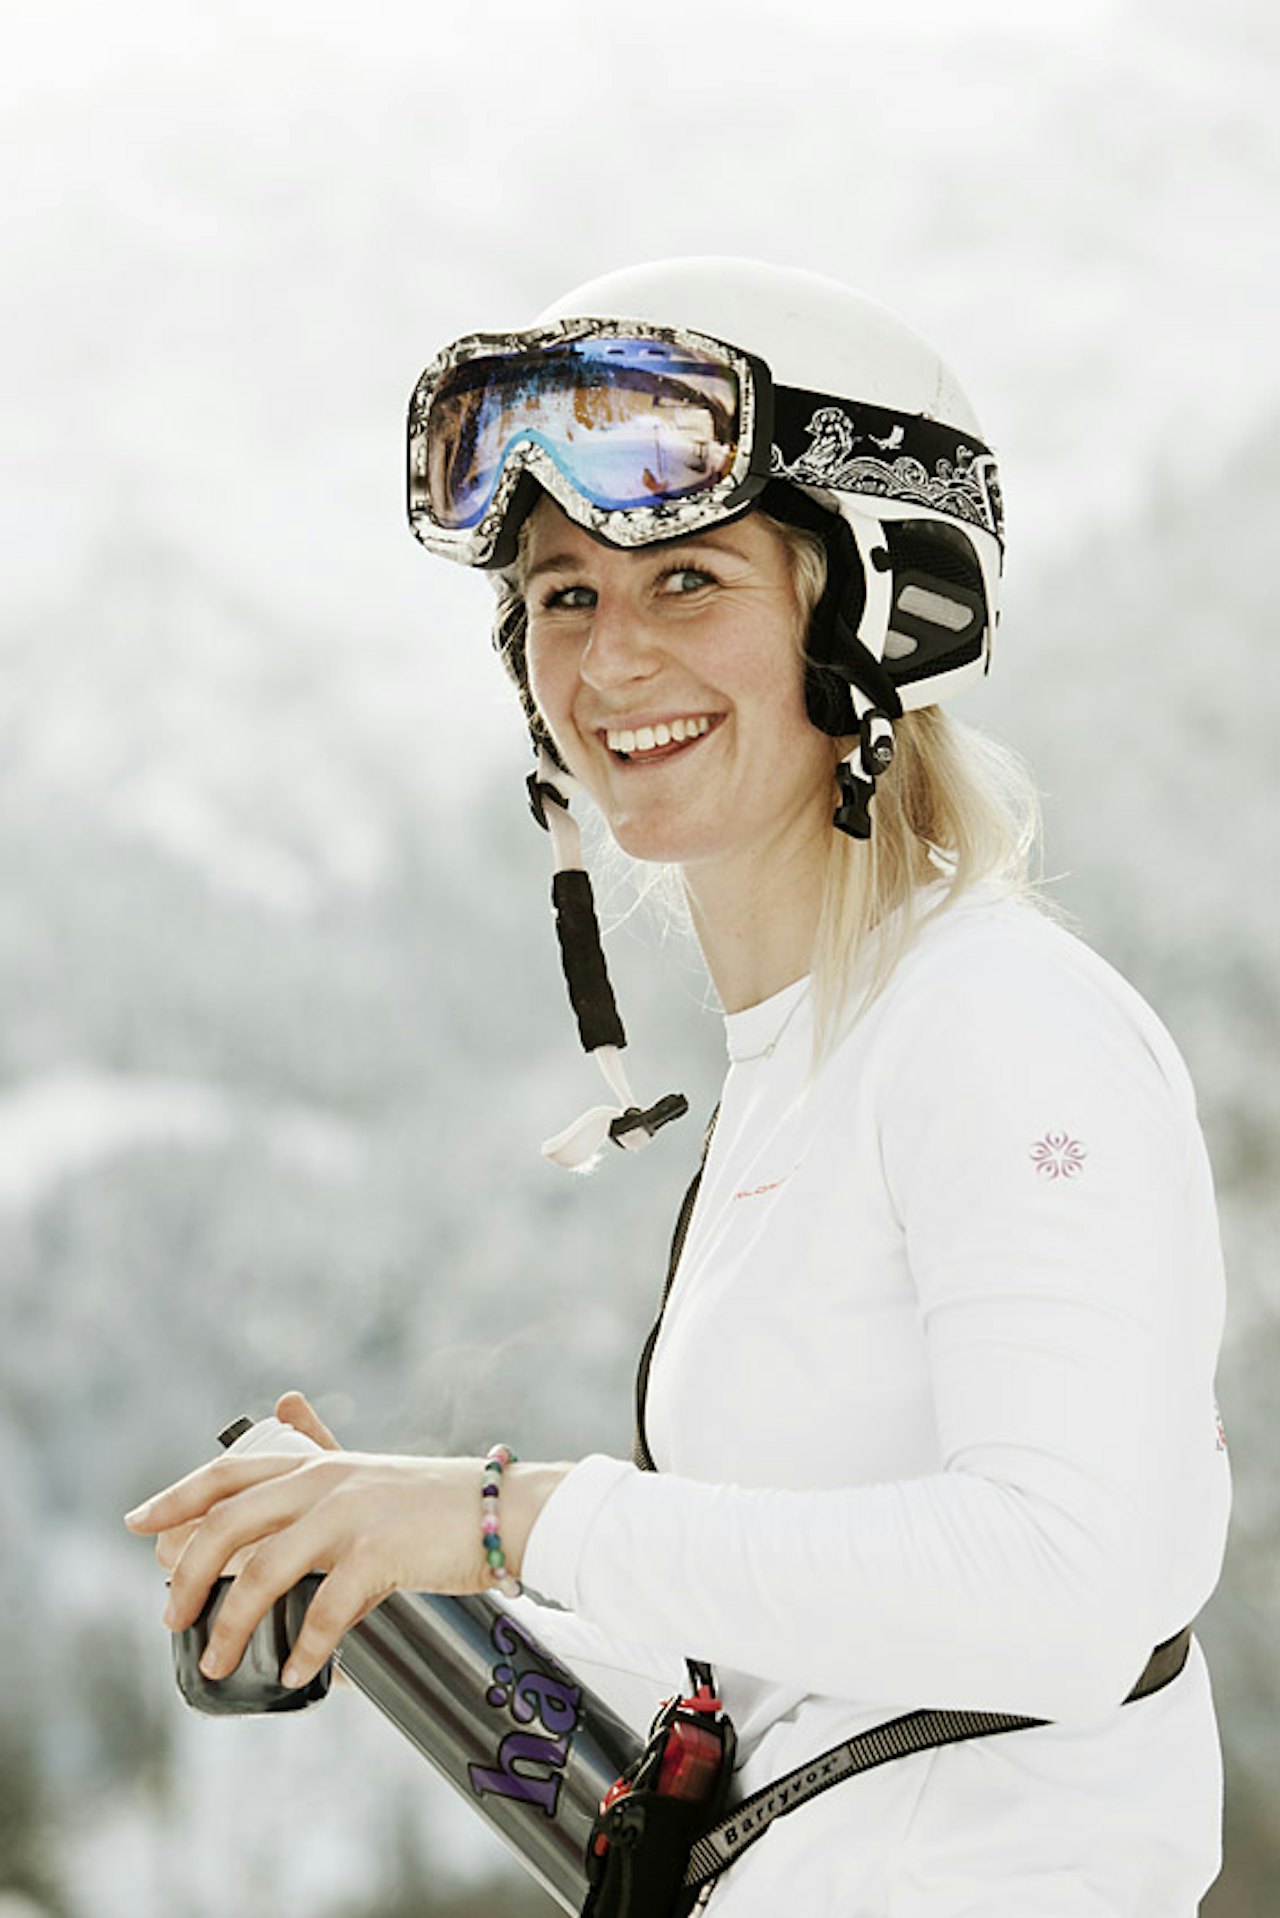 PÅ FILM: Janicke Svedberg bor i Sveits, og hun har sikra seg plass i skifilmen Steps, som kommer til høsten. Foto: Fredrik Schenholm